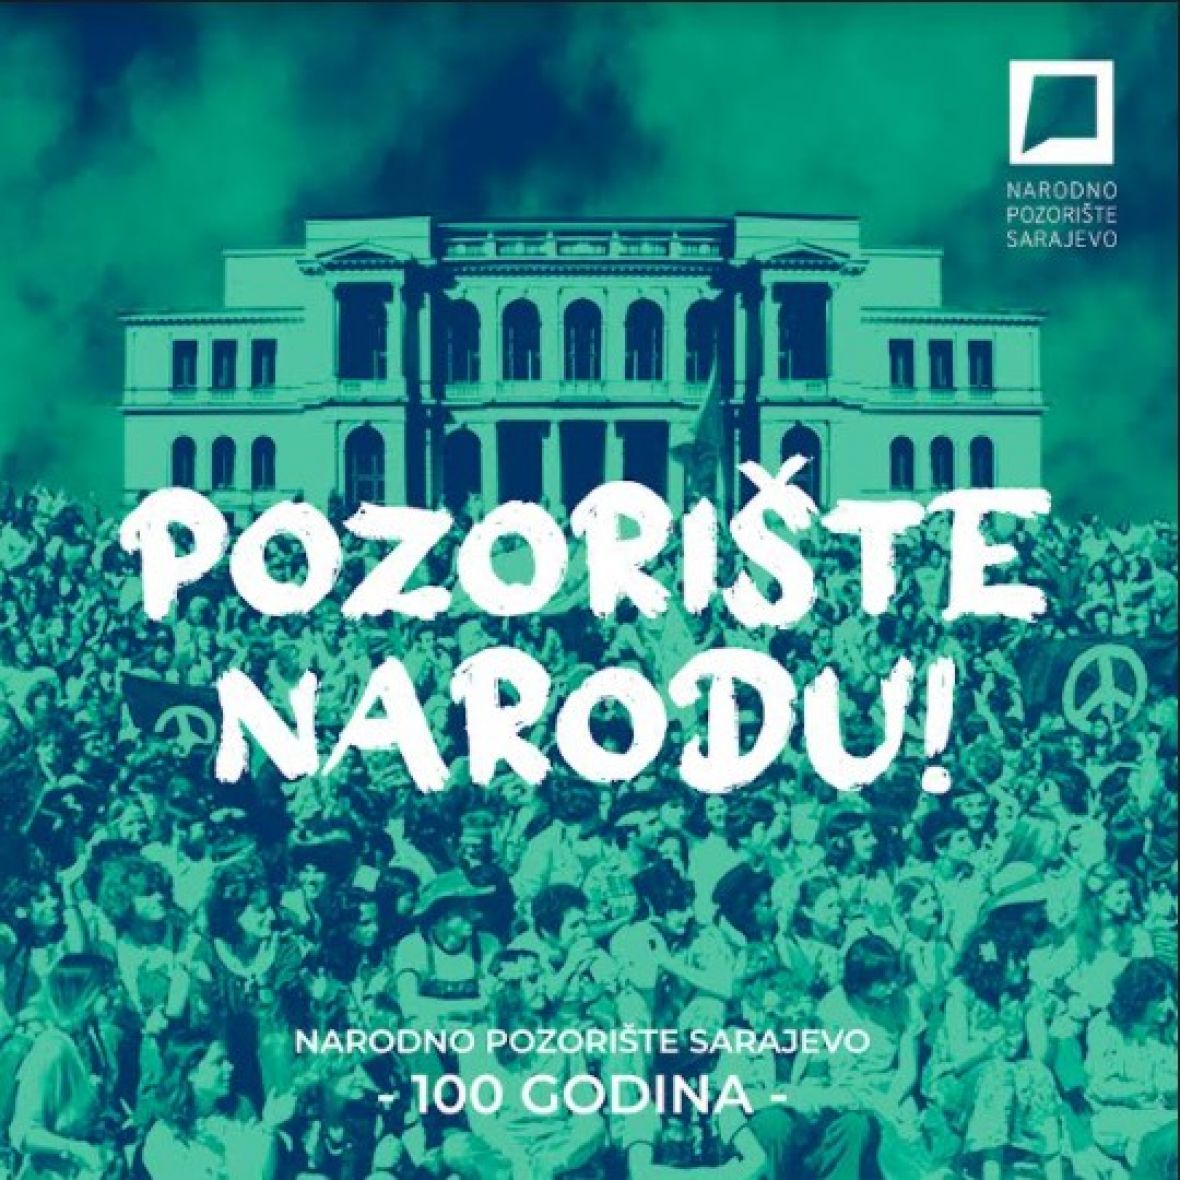 Narodno pozorište Sarajevo - undefined